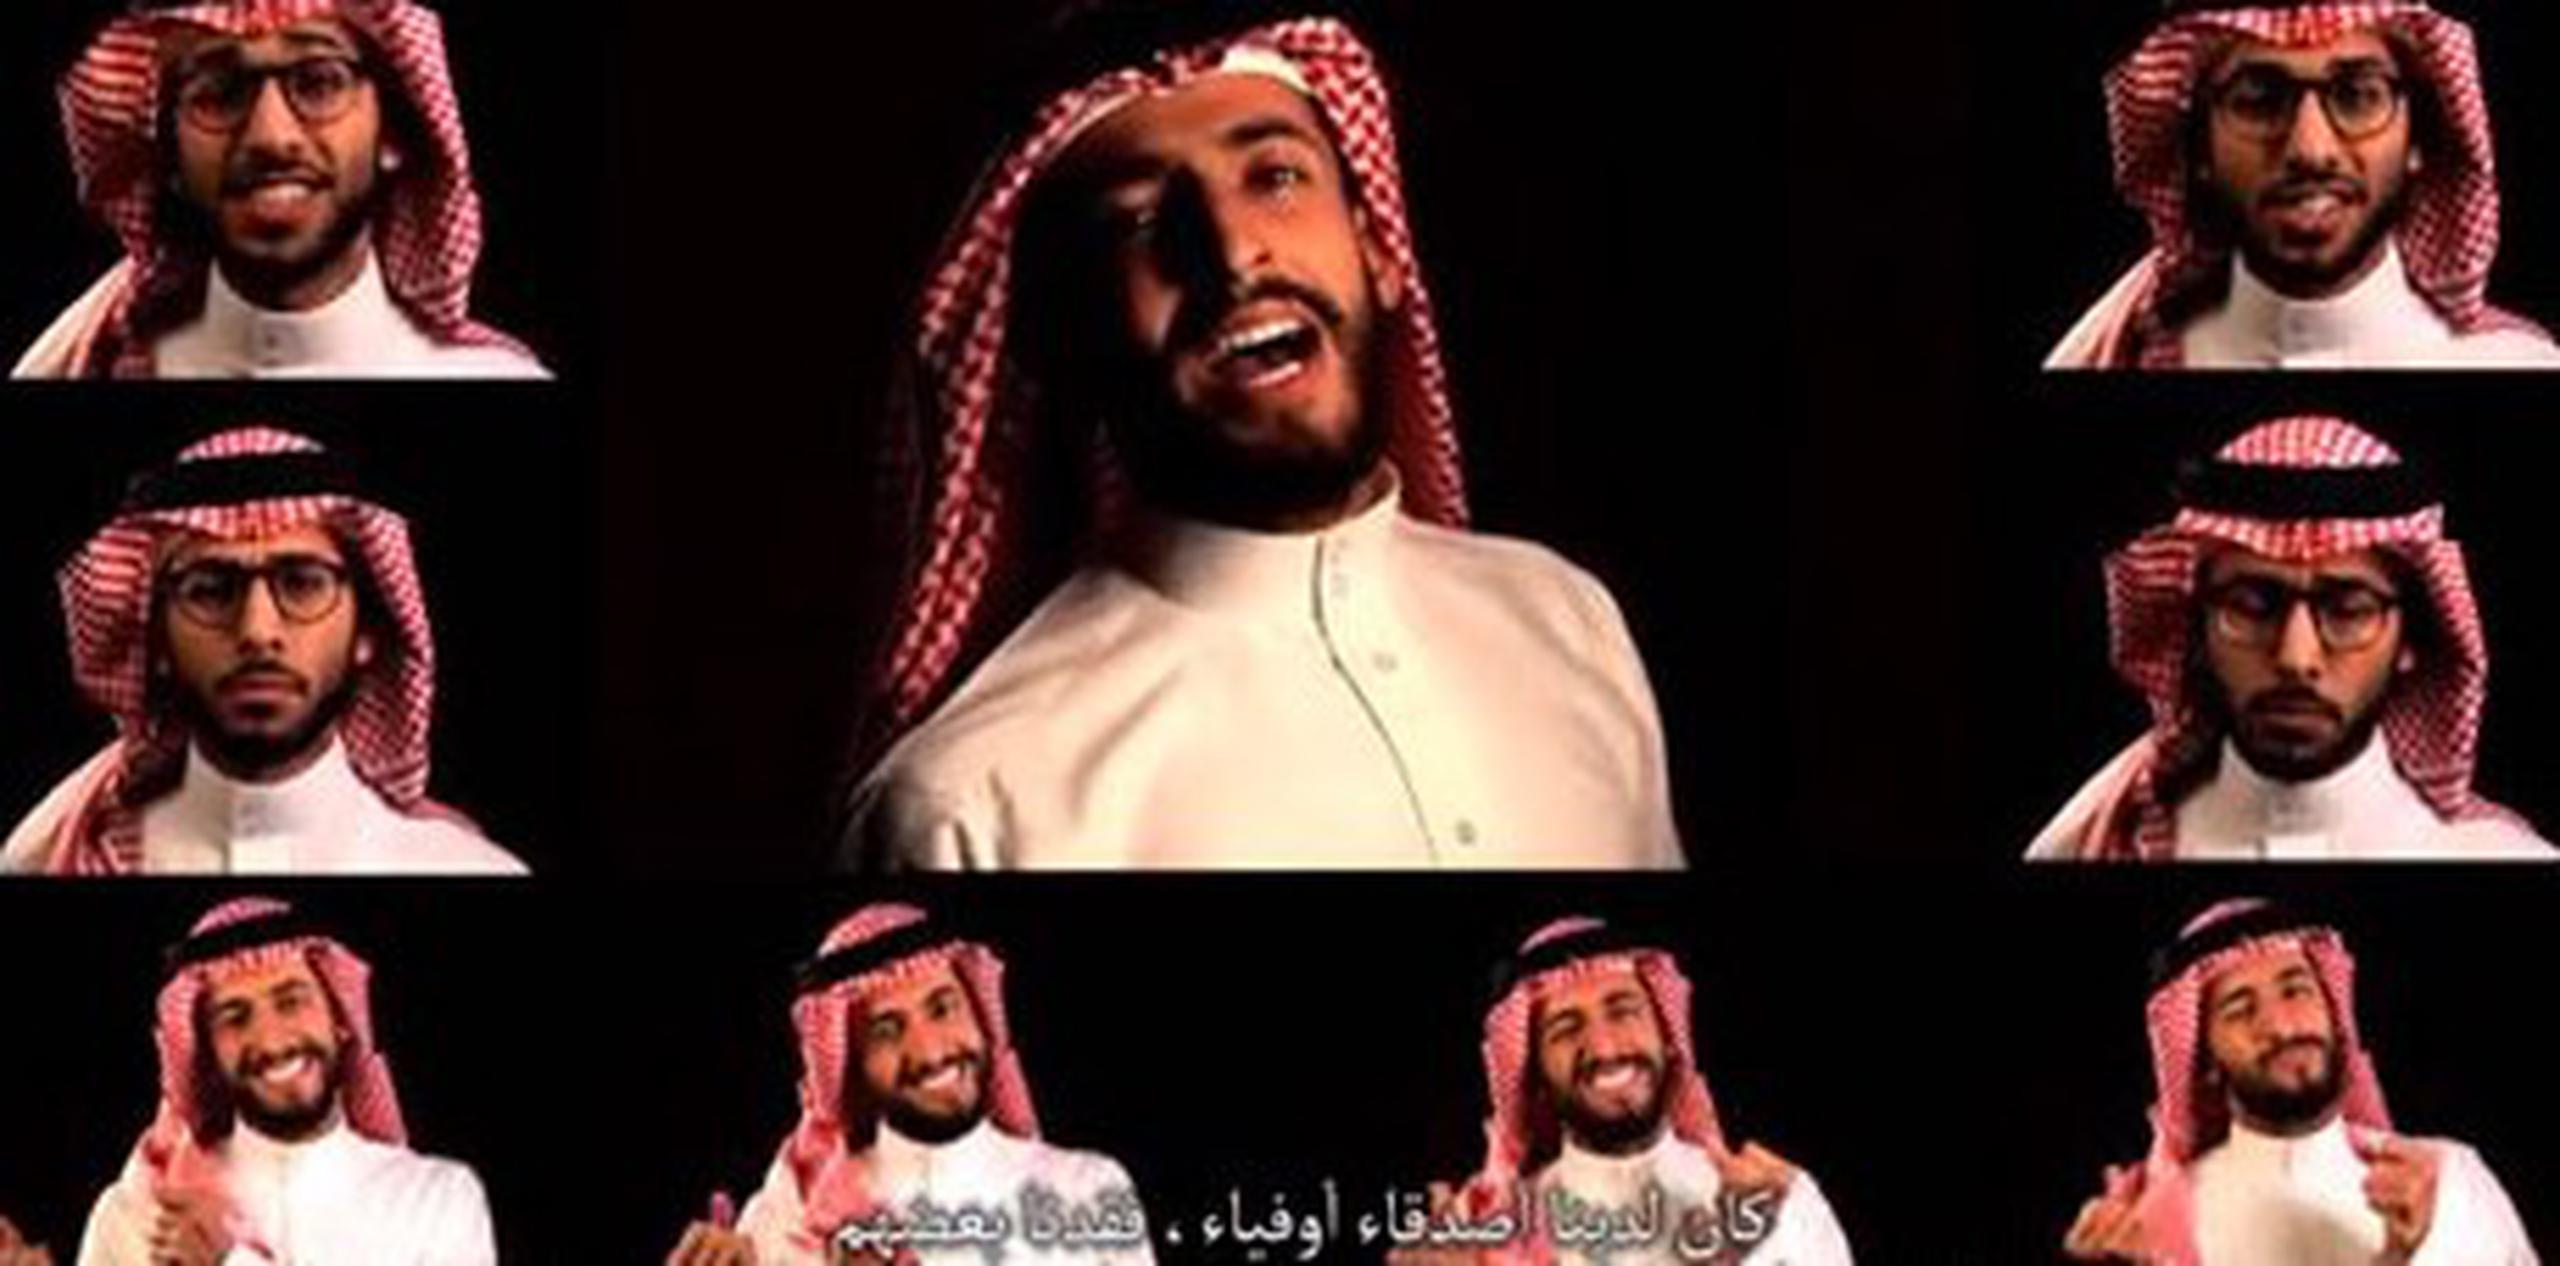 El cómico Hisham Fageeh vestido al modo tradicional saudí en el vídeo "No Woman, no Drive". (Youtube)